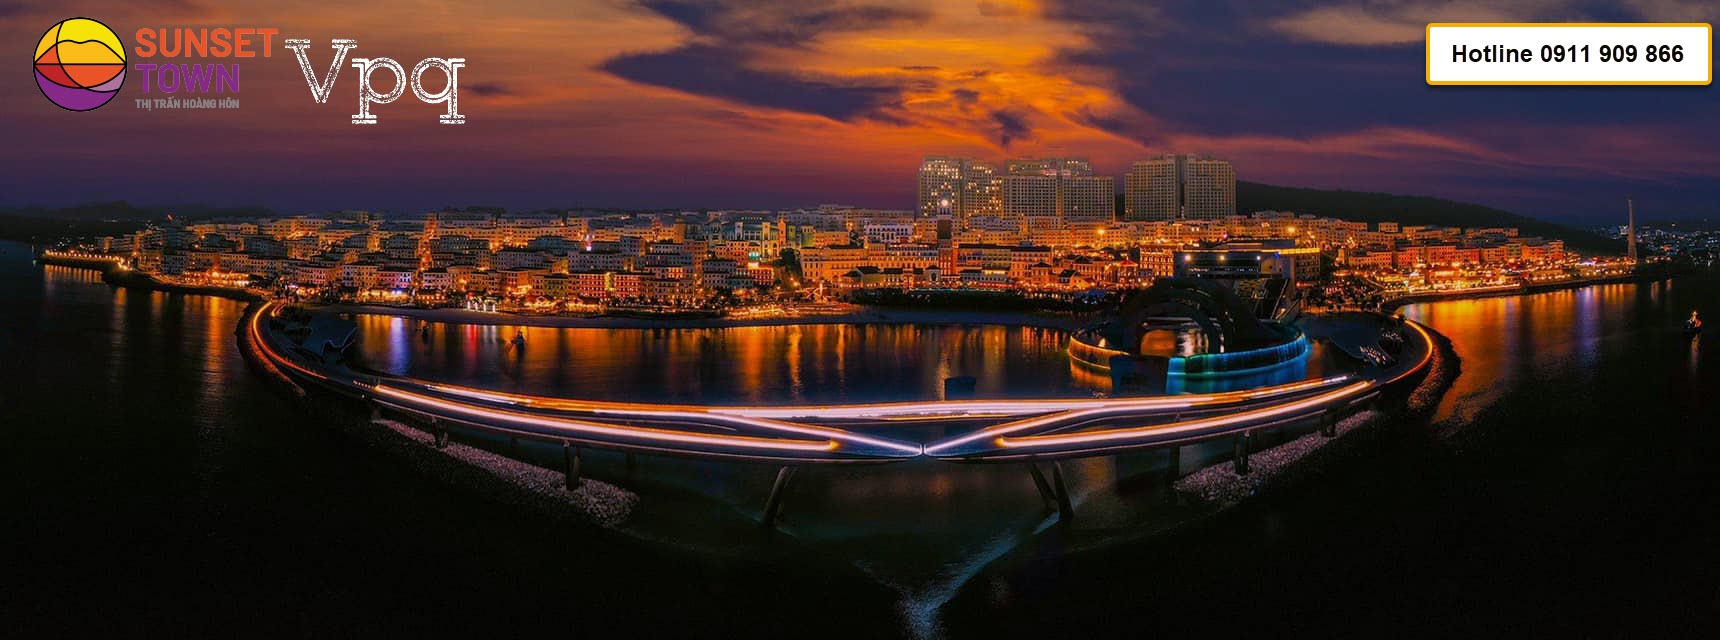 Toàn cảnh thị trấn Hoàng Hôn Sunset Town trong màn đêm Phú Quốc